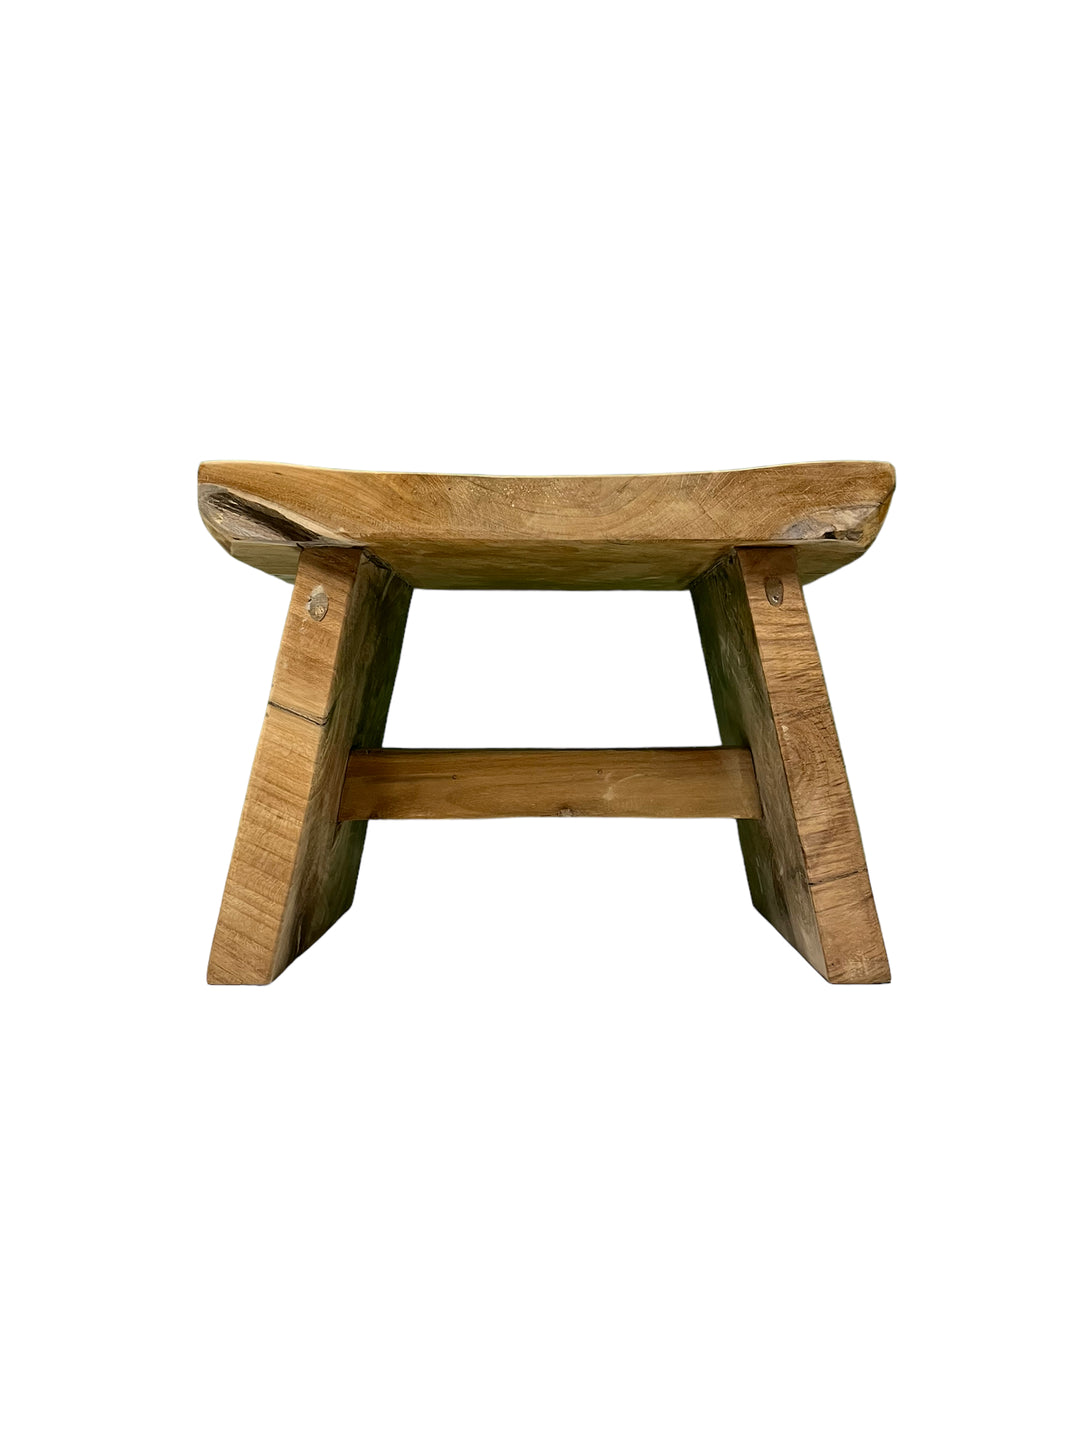 Japan low stool